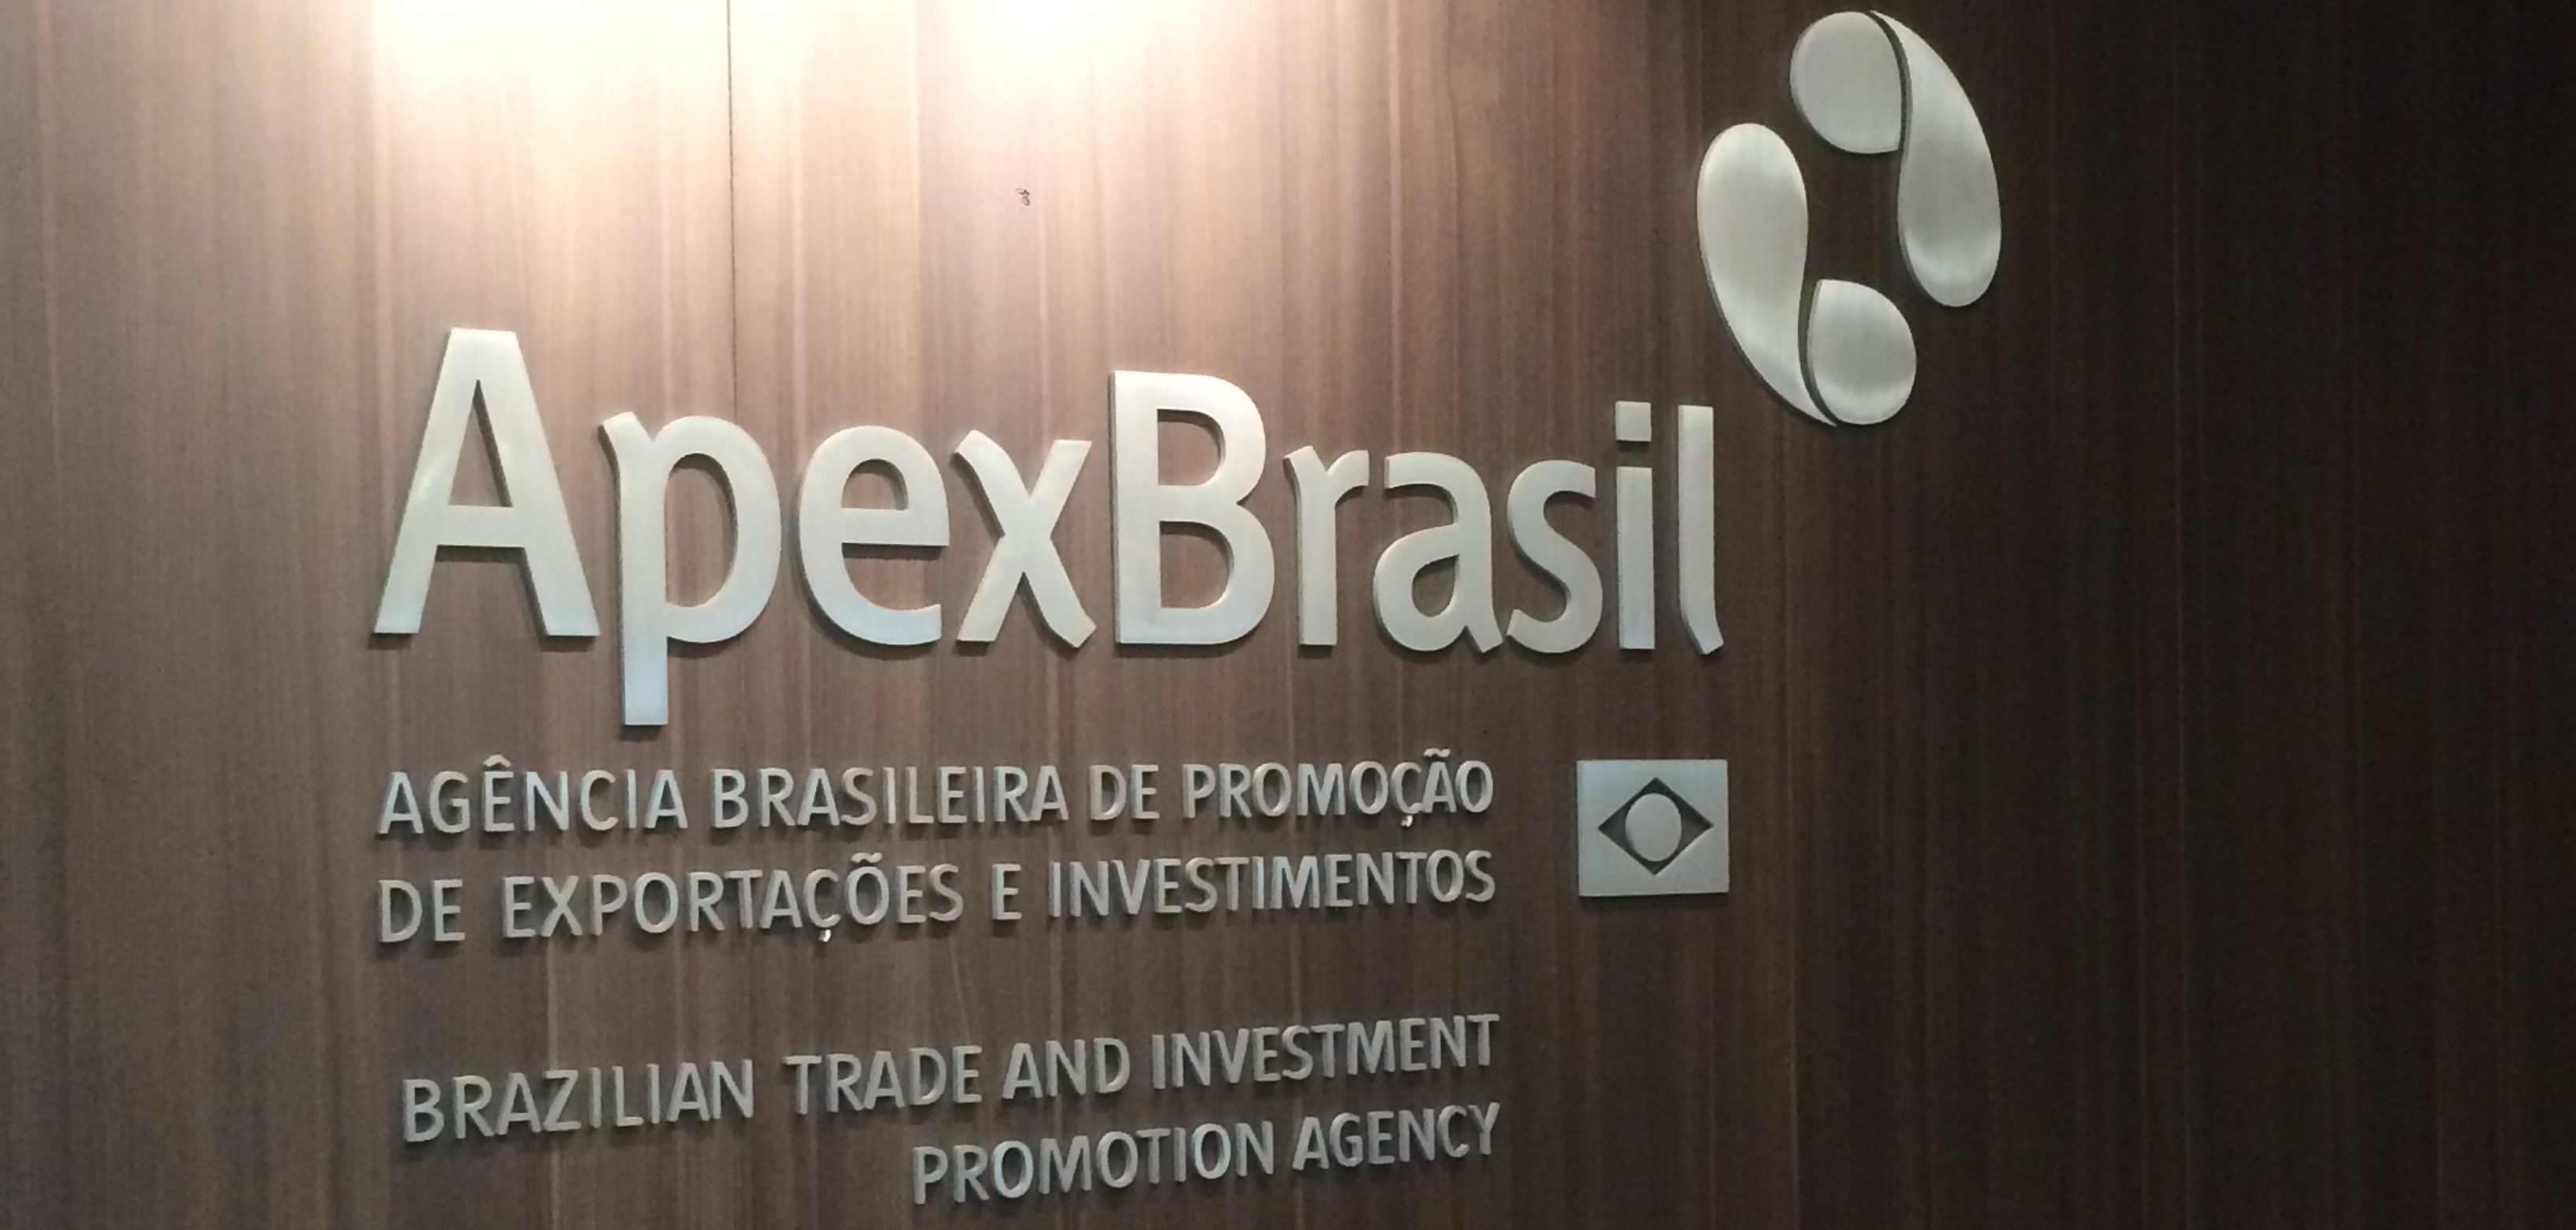 Apex-Brasil realiza semana sobre e-commerce internacional - Apex-Brasil